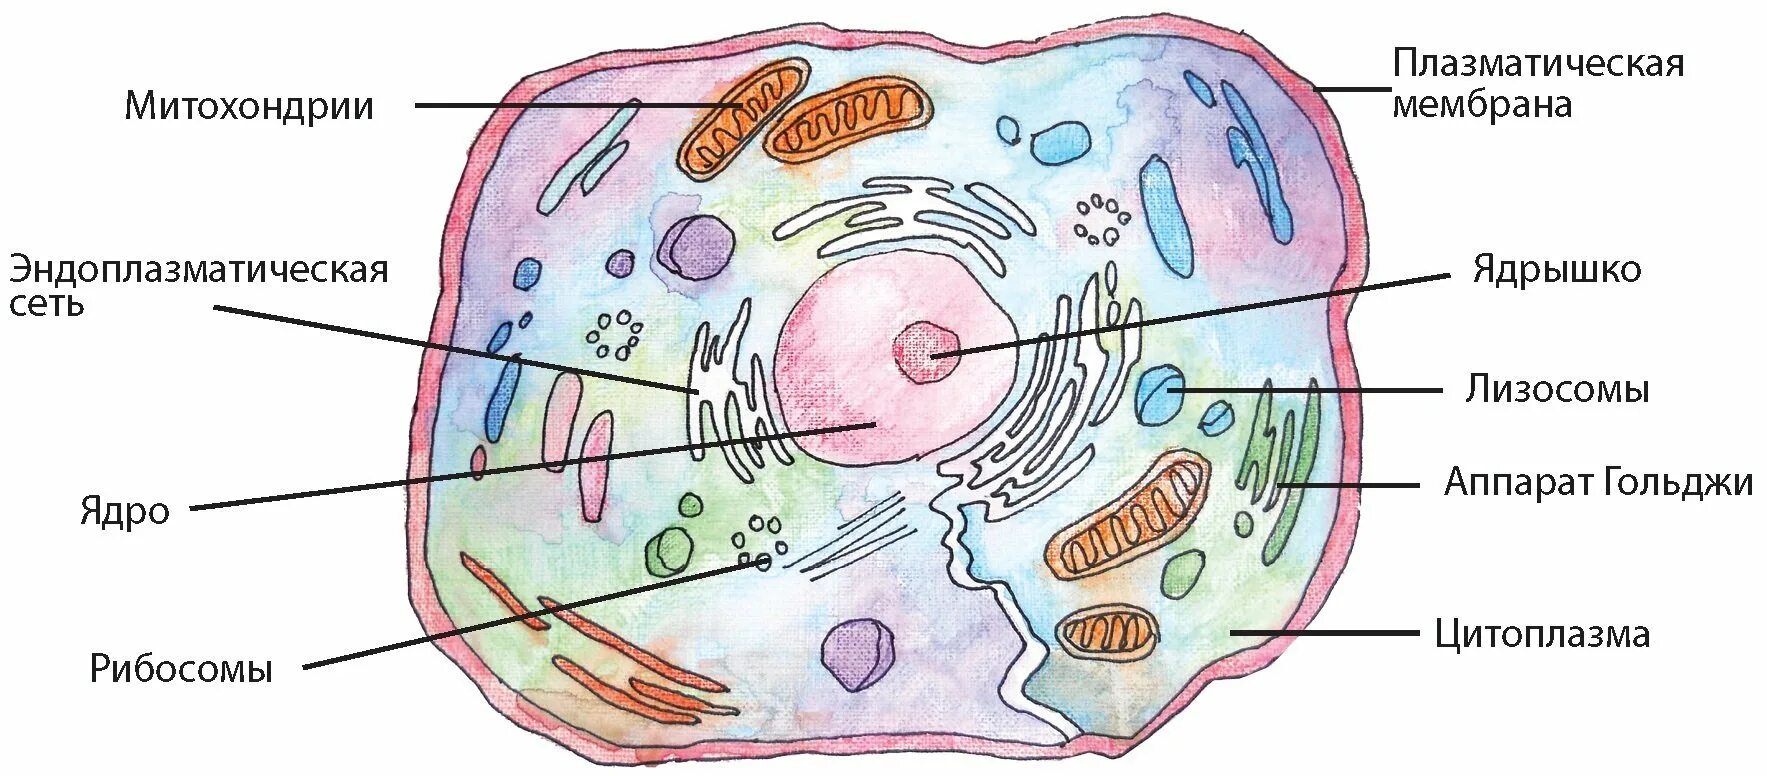 Лизосомы прокариотической клетки. Строение клетки мембрана цитоплазма органоиды ядро. Клеточный центр цитоплазма митохондрии. Схема строения эукариотической клетки. Схематическое строение эукариотической клетки.